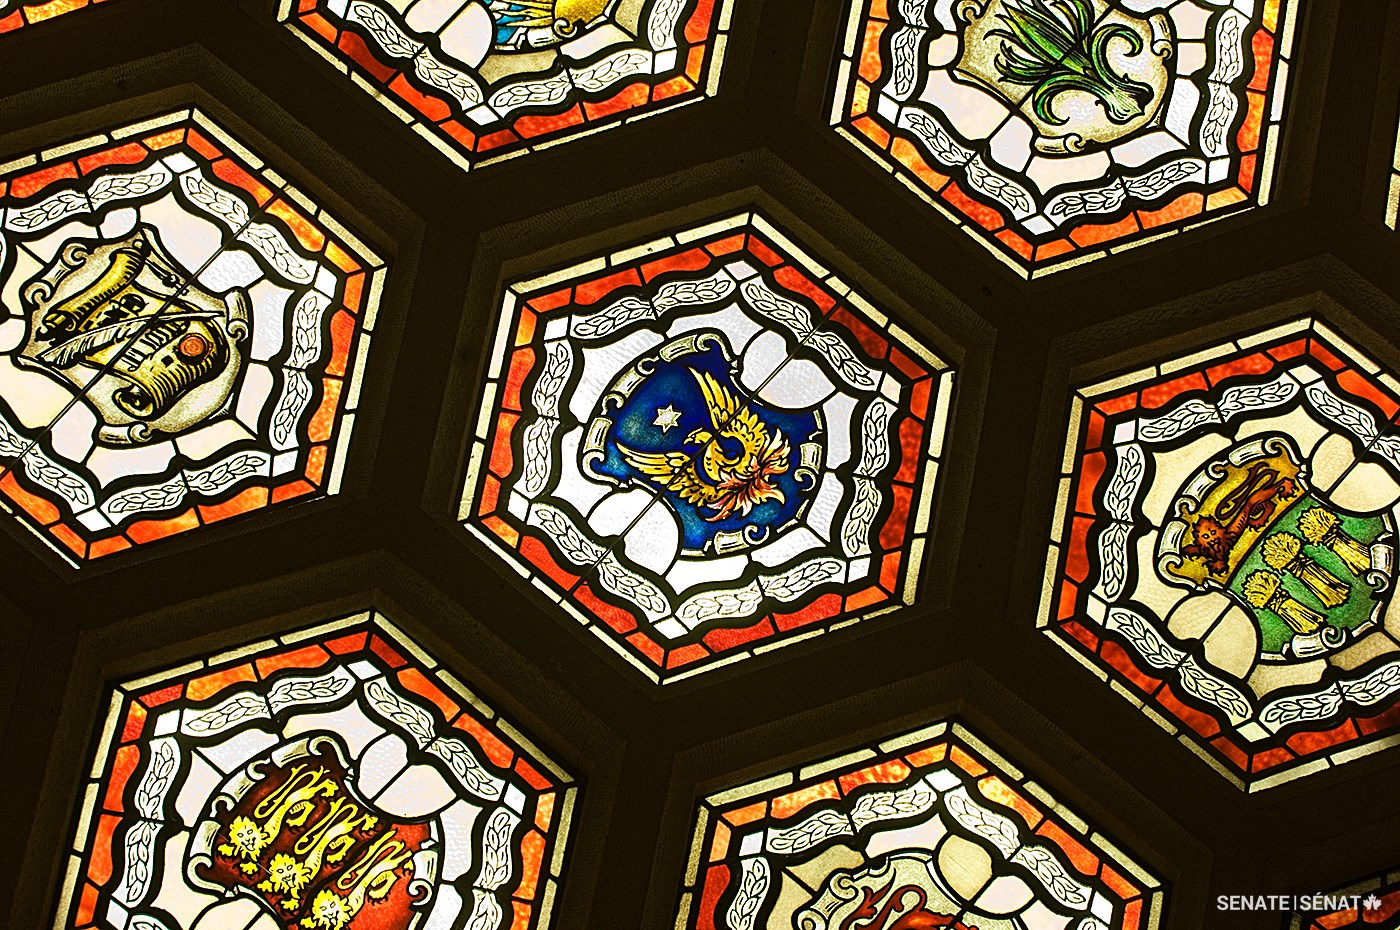 Un phénix renaissant de ses cendres figure parmi les 105 vitraux qui décorent le plafond du foyer du Sénat. Il évoque l’incendie de 1916 sur la Colline du Parlement et la résurrection de l’édifice du Centre.